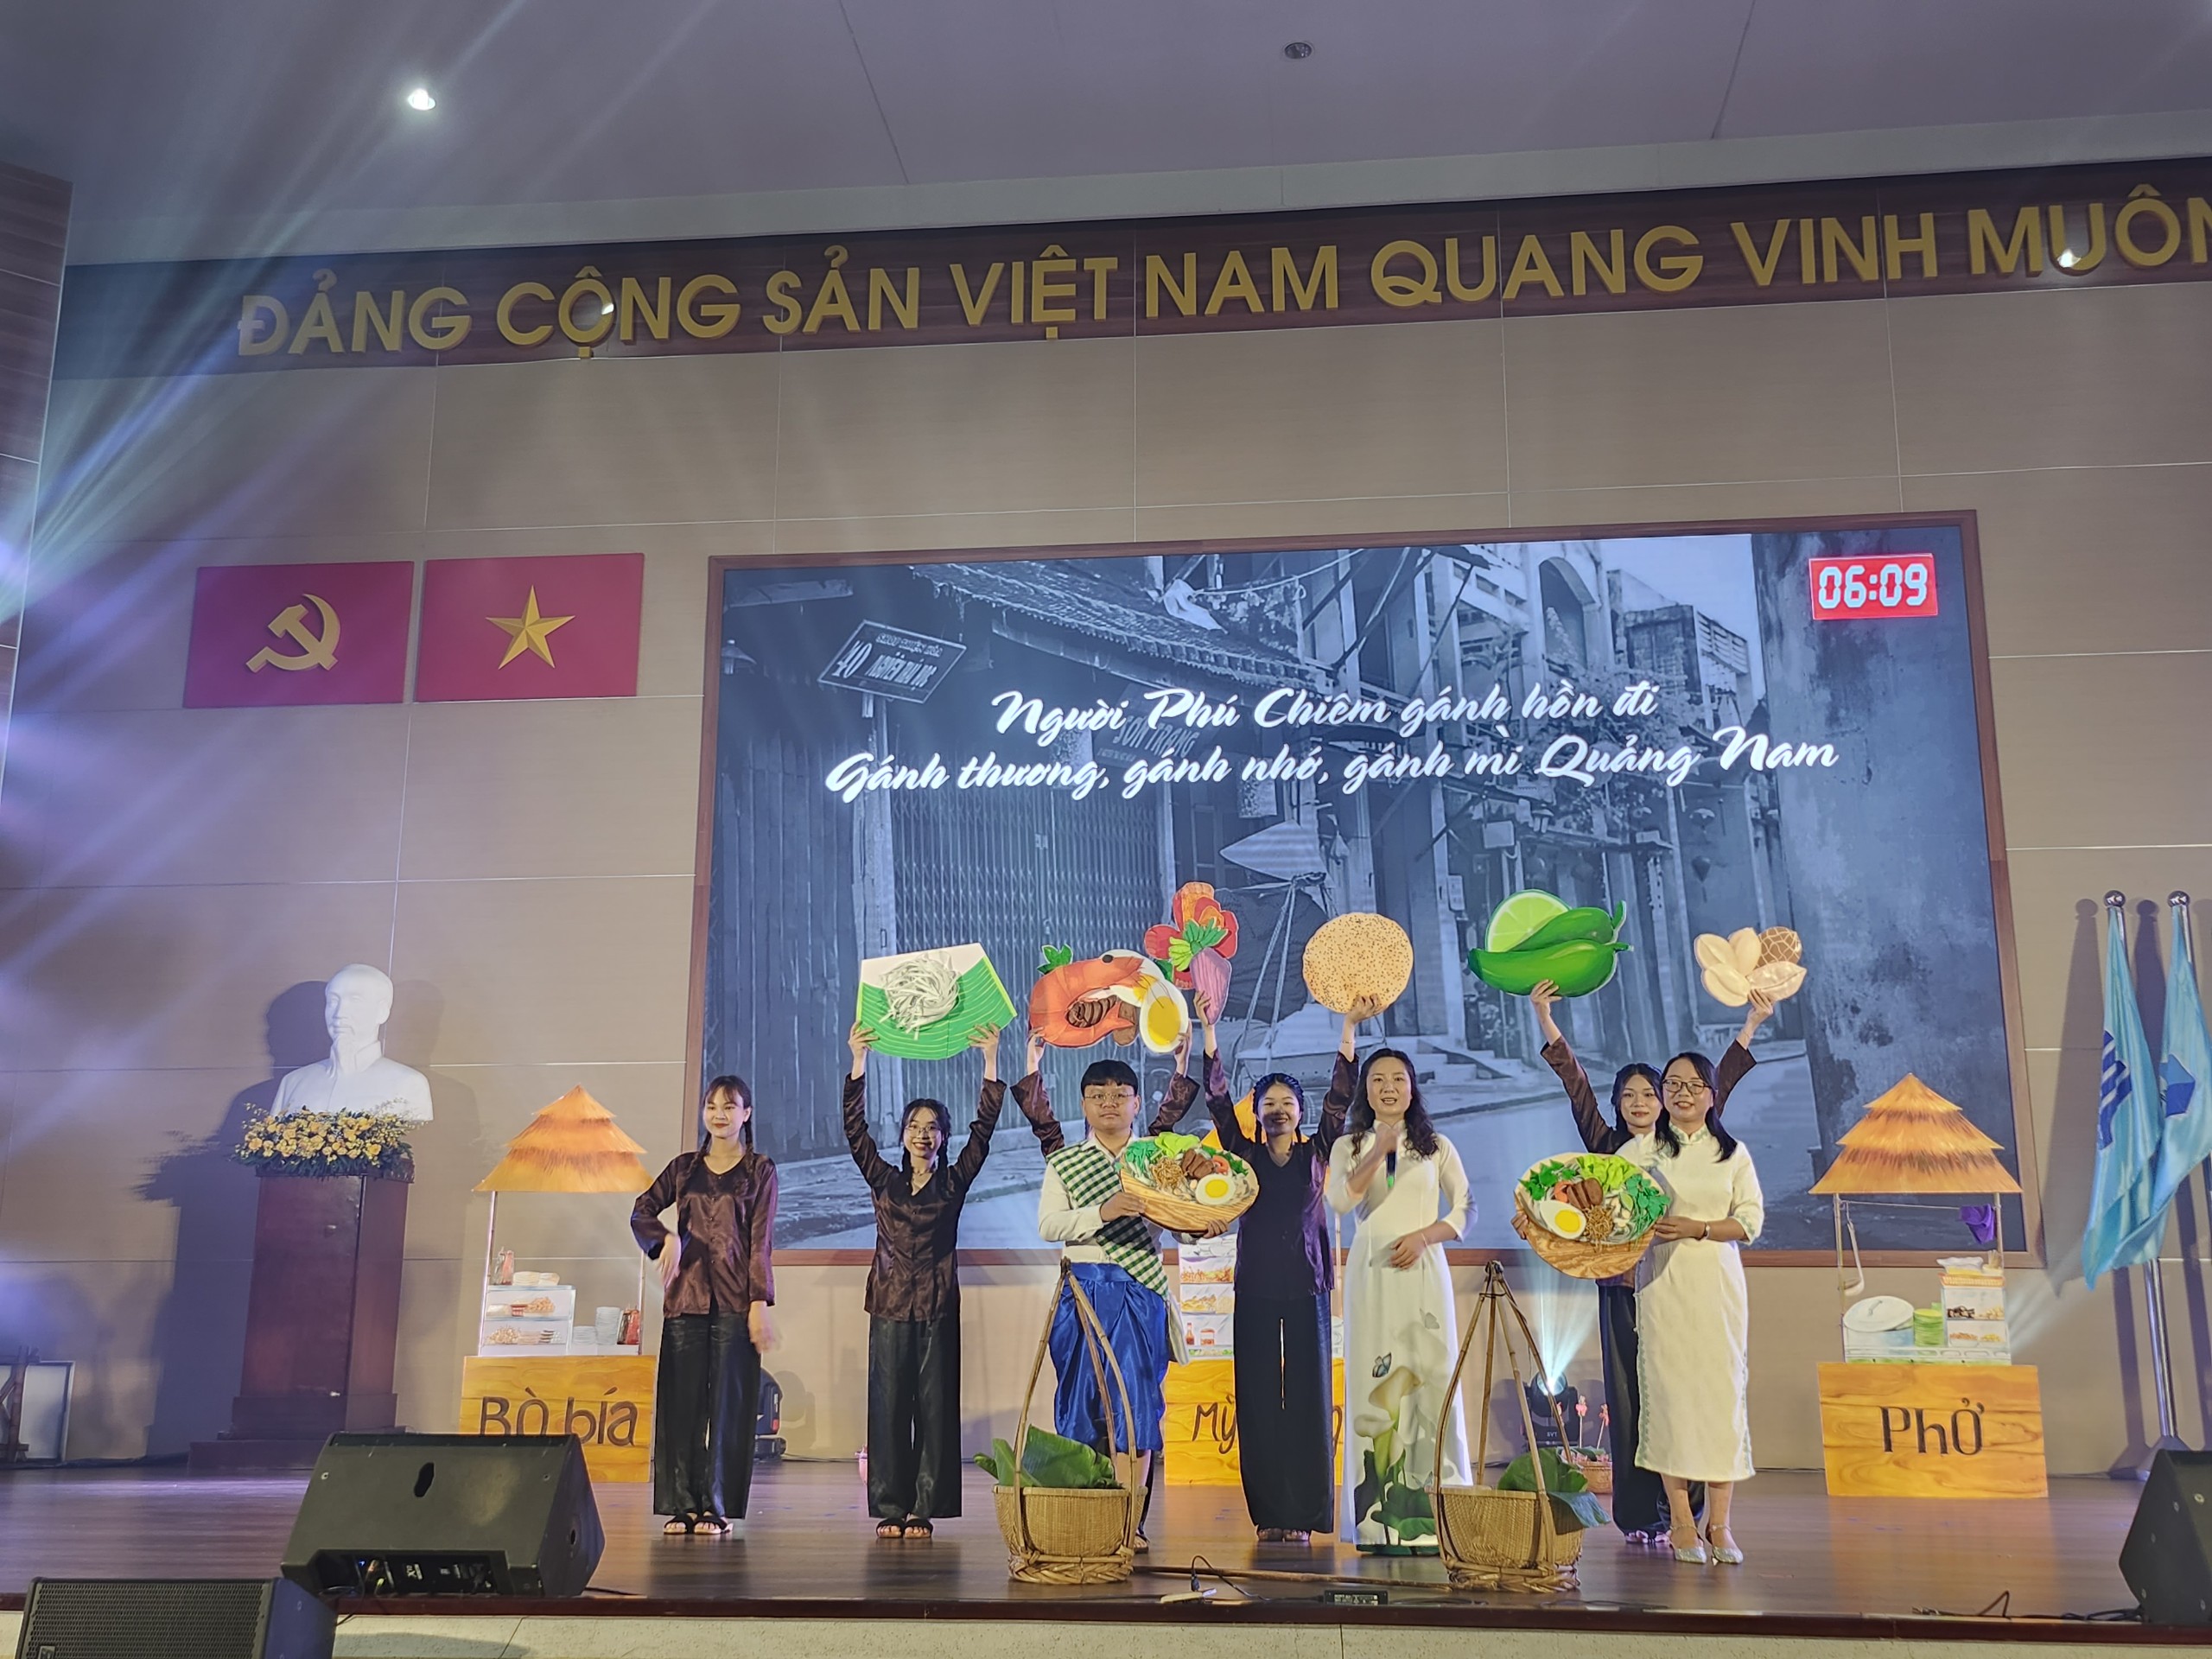 Sững sờ trước biệt tài hùng biện tiếng Việt của lưu học sinh nước ngoài